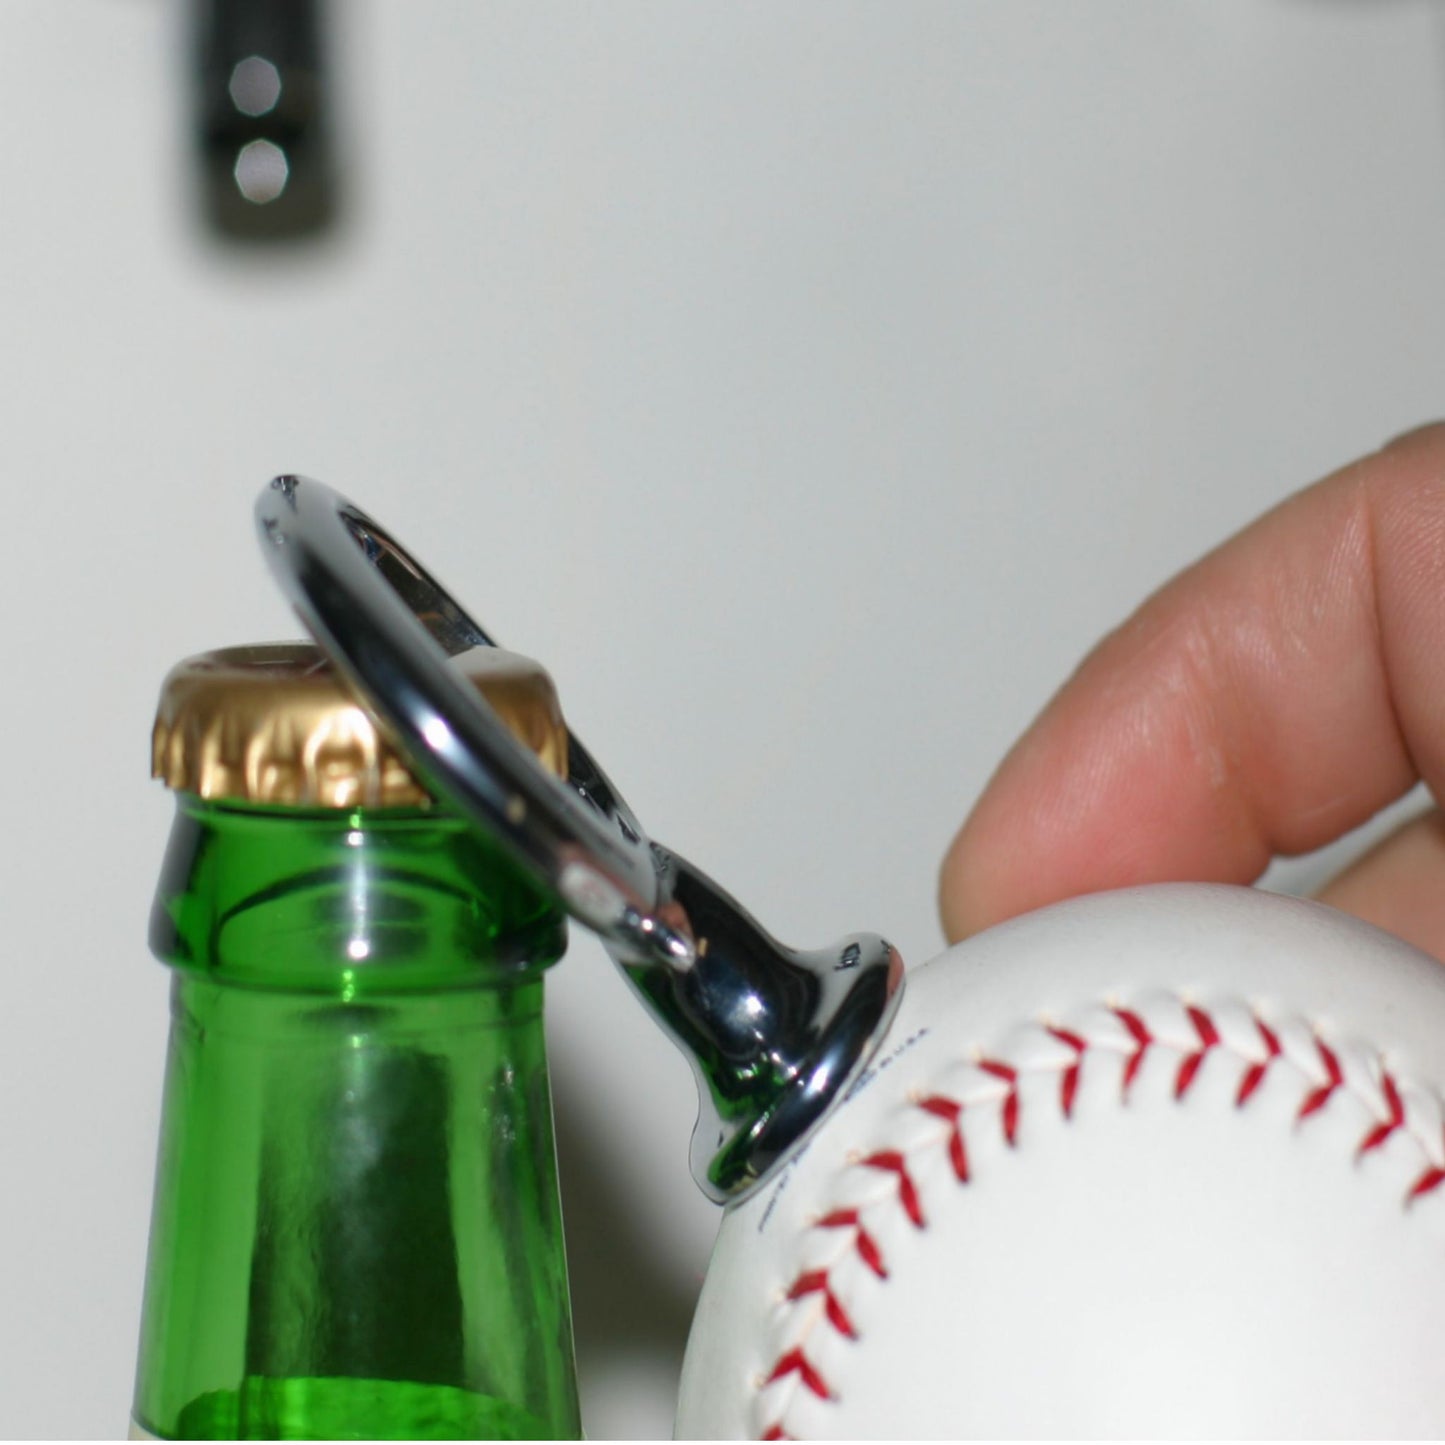 New York Mets Licensed Baseball Fulcrum Series Bottle Opener